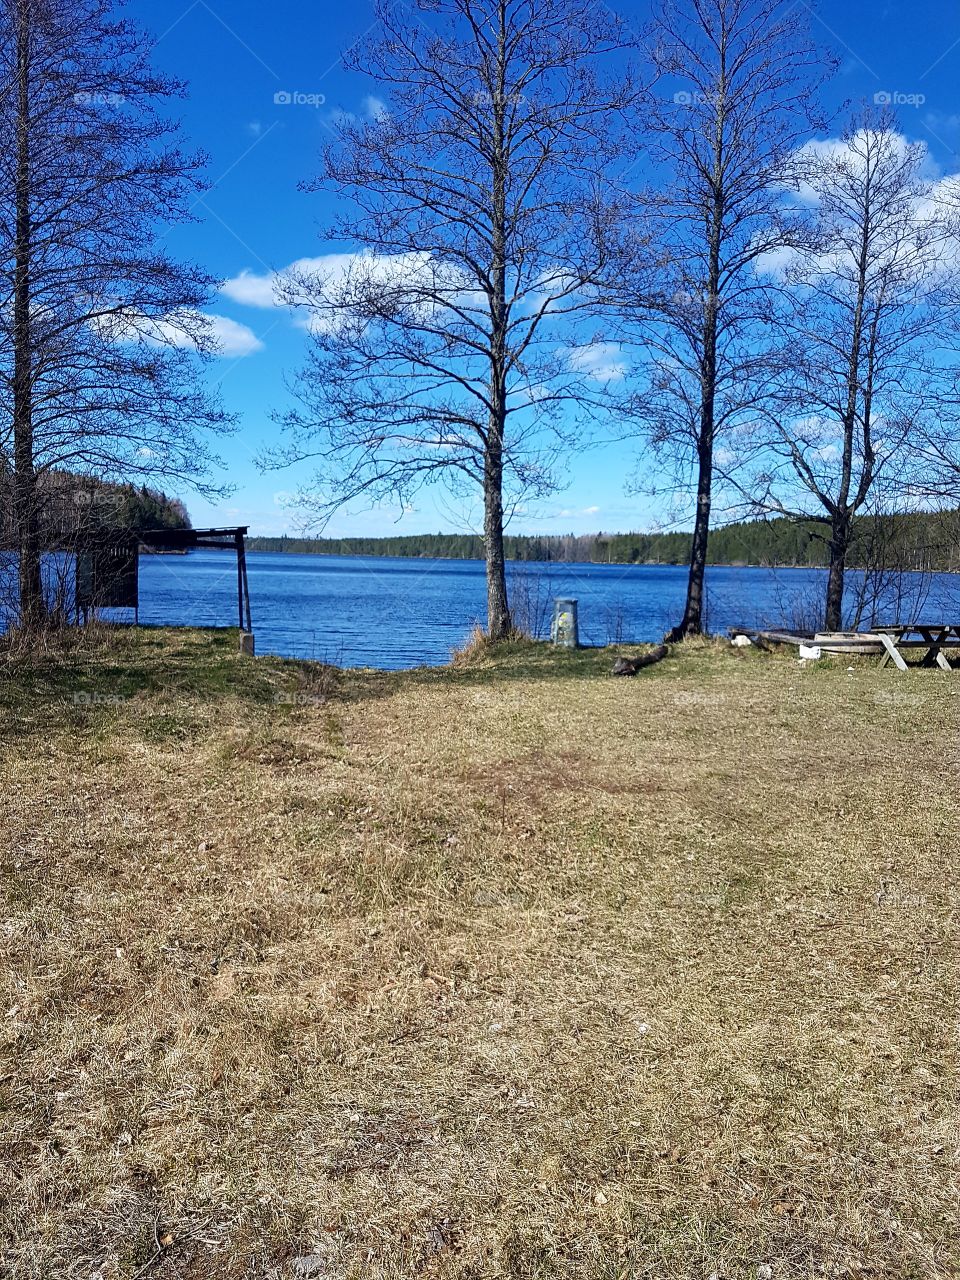 nature
lake